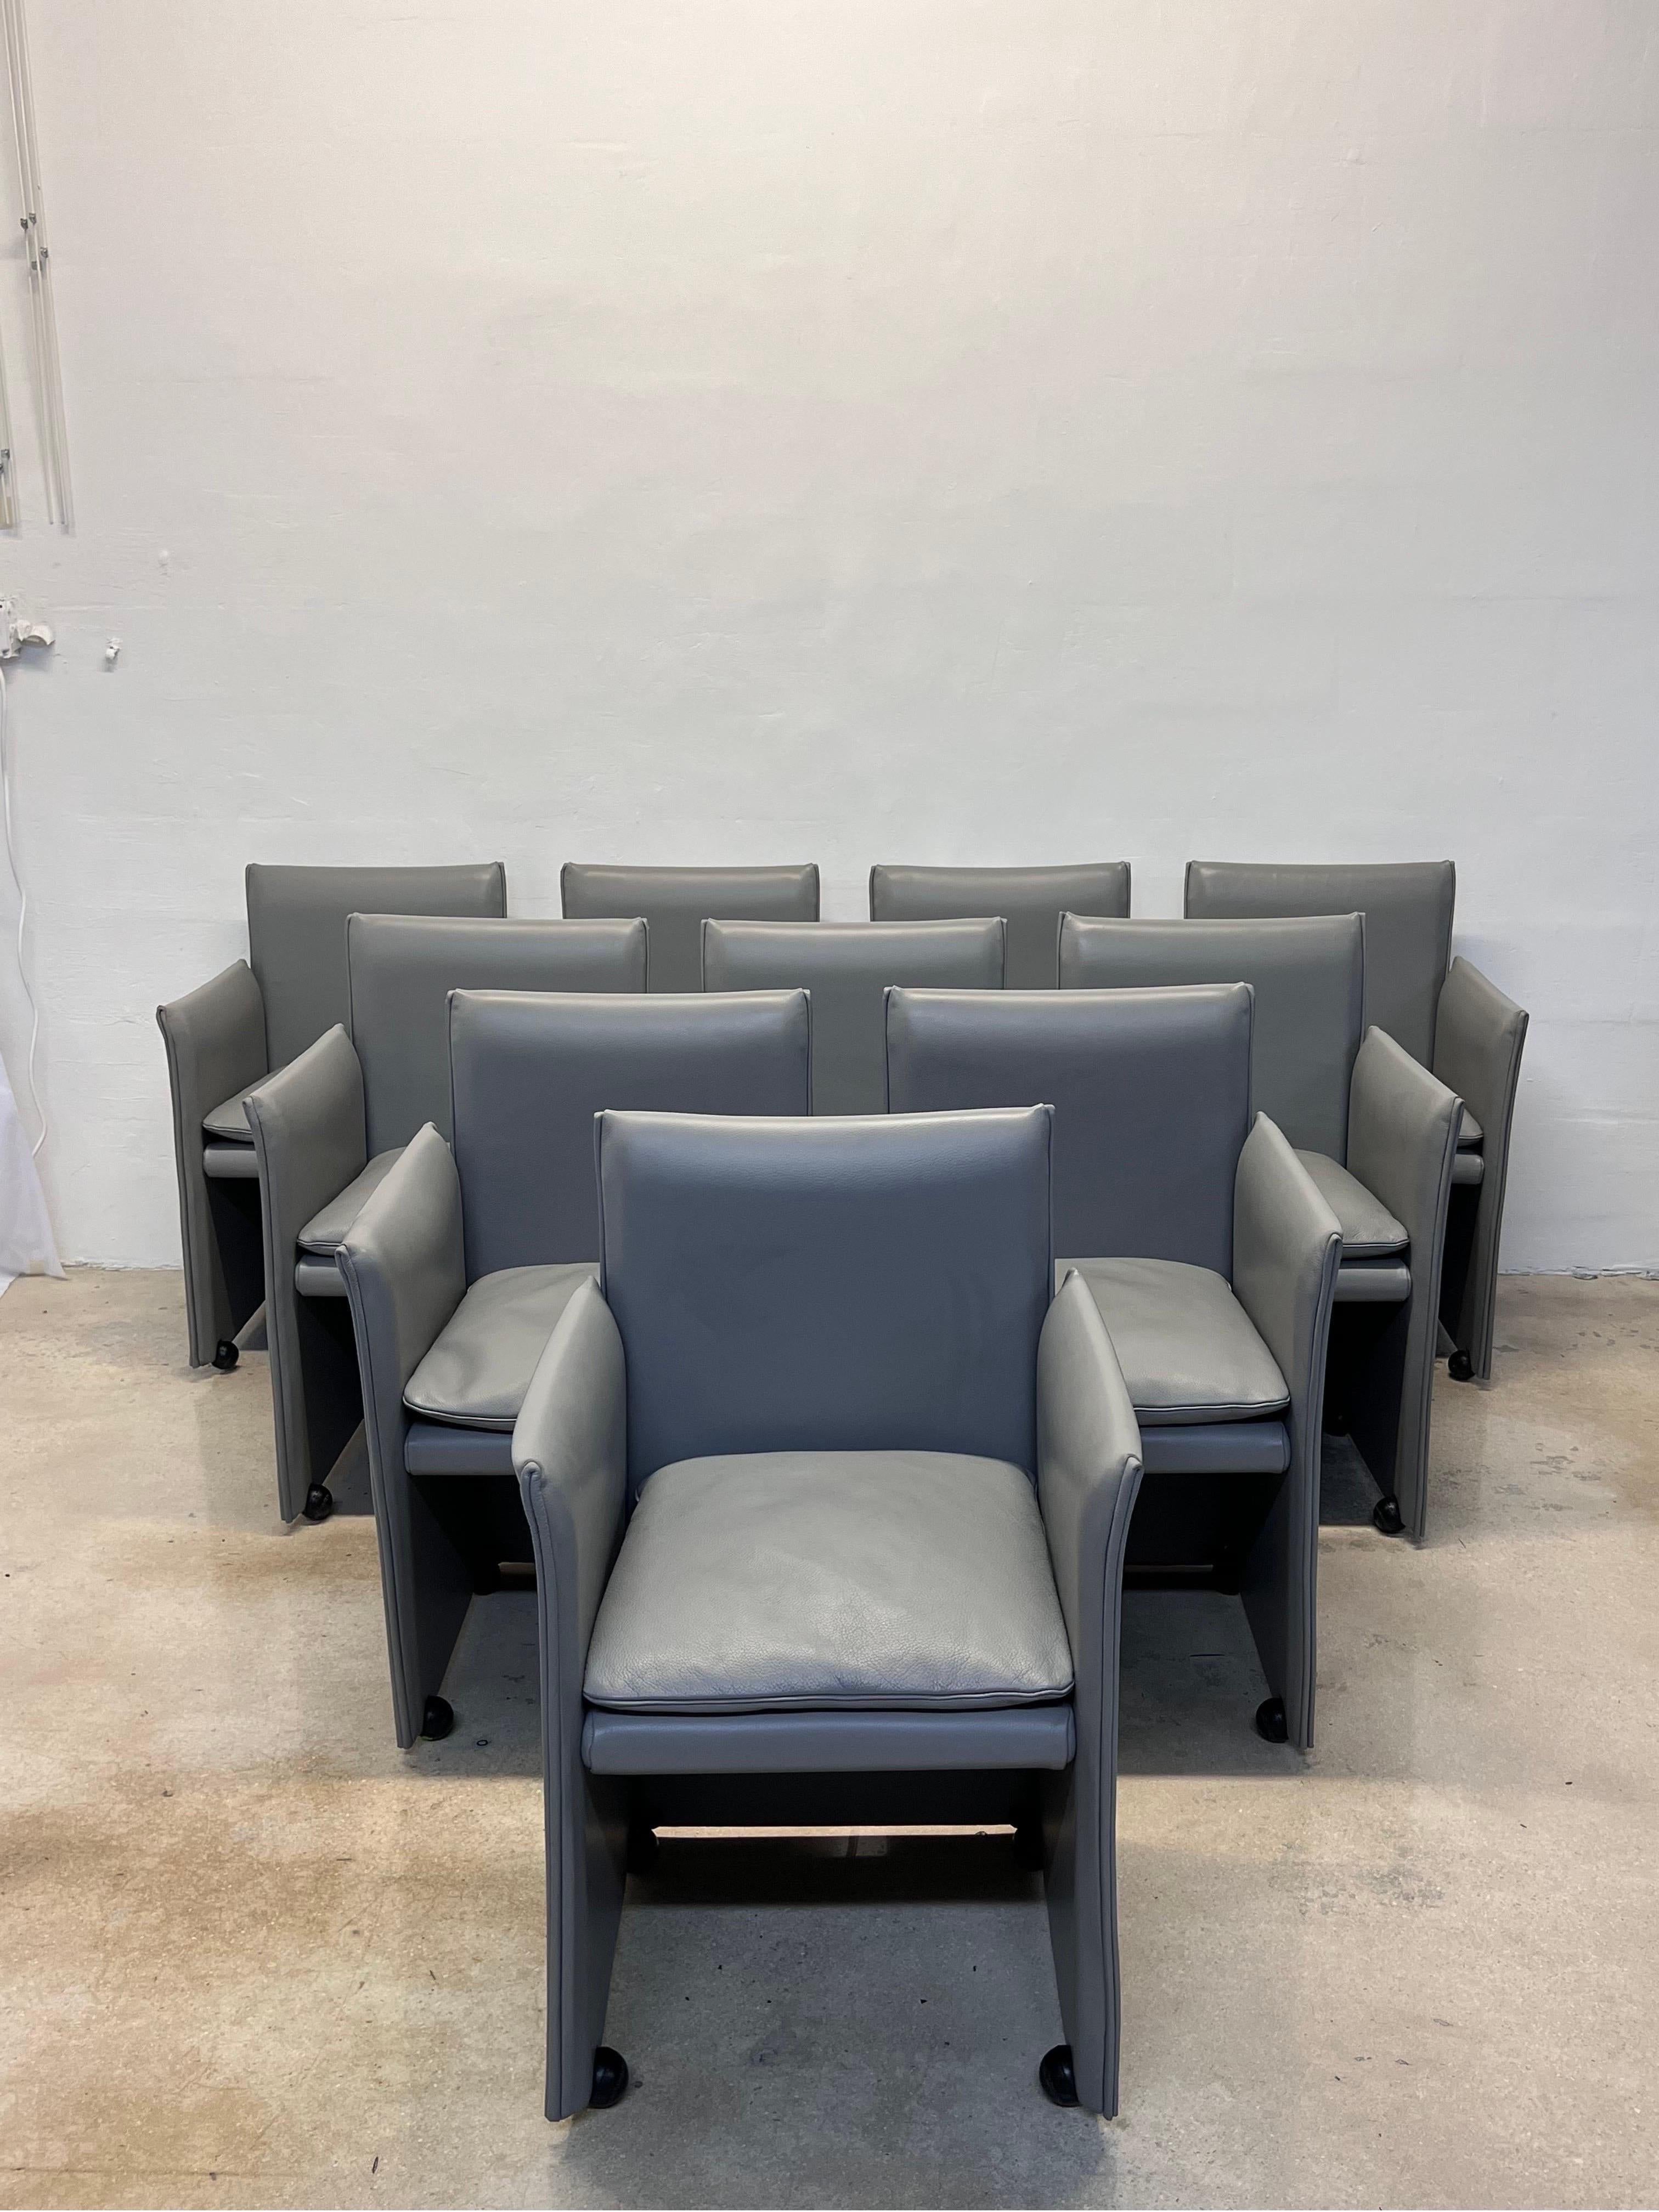 Rare ensemble de dix fauteuils de salle à manger sur roulettes en cuir gris 401 Break, conçu par Mario Bellini pour Cassina Spa. Les chaises sont dotées de coussins moelleux remplis de duvet et le cuir est enveloppé sur un cadre en acier.

Hauteur